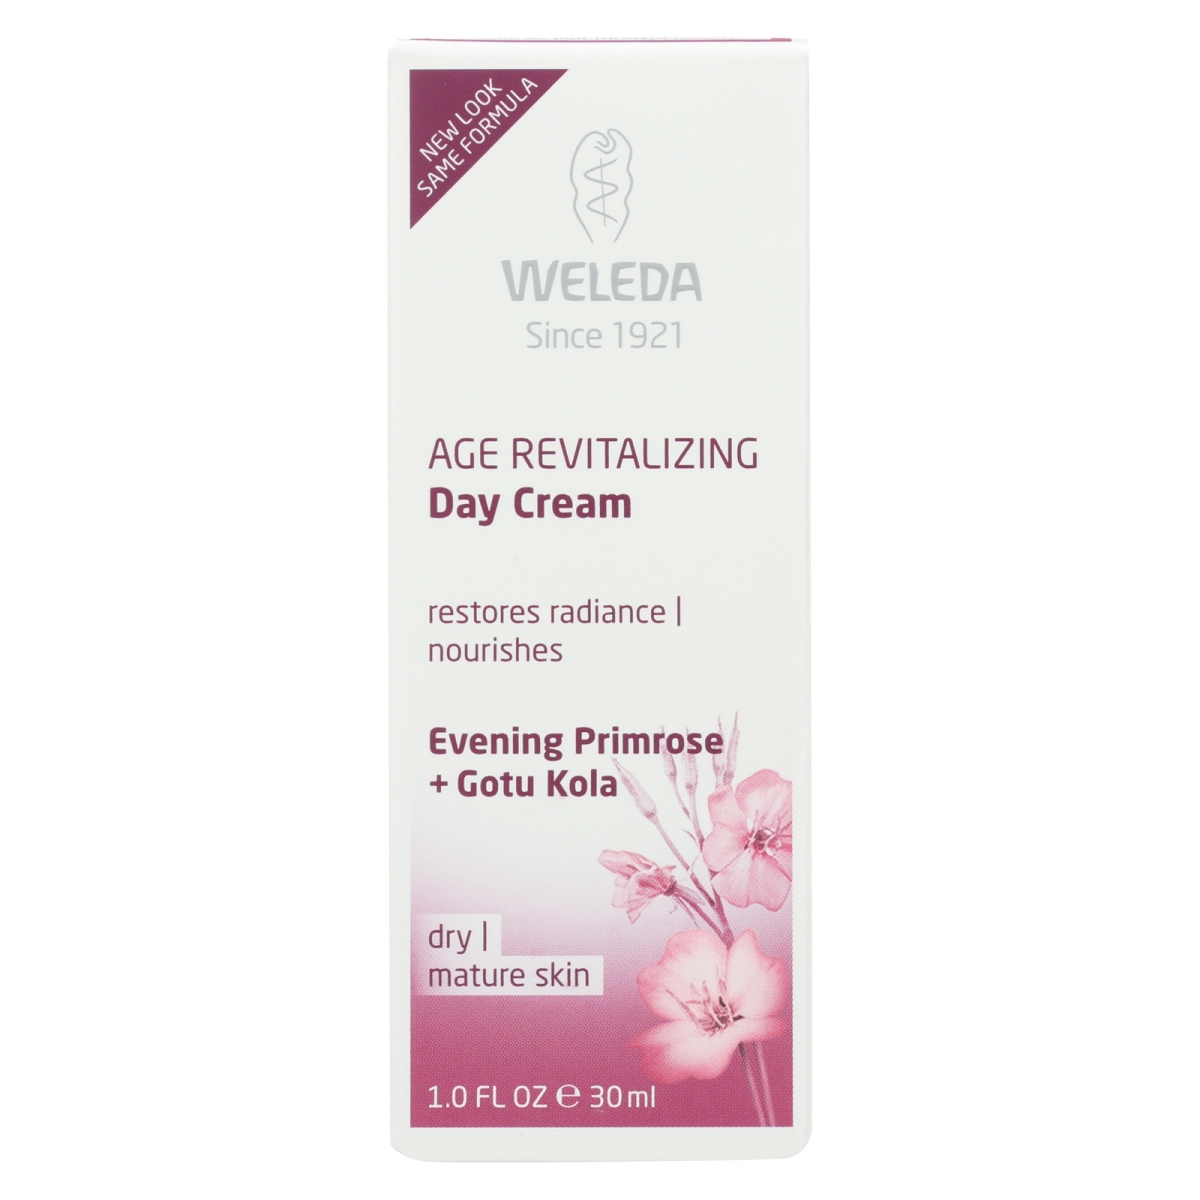 1638014 Age Revitalizing Evening Primrose Day Cream, 1 Oz